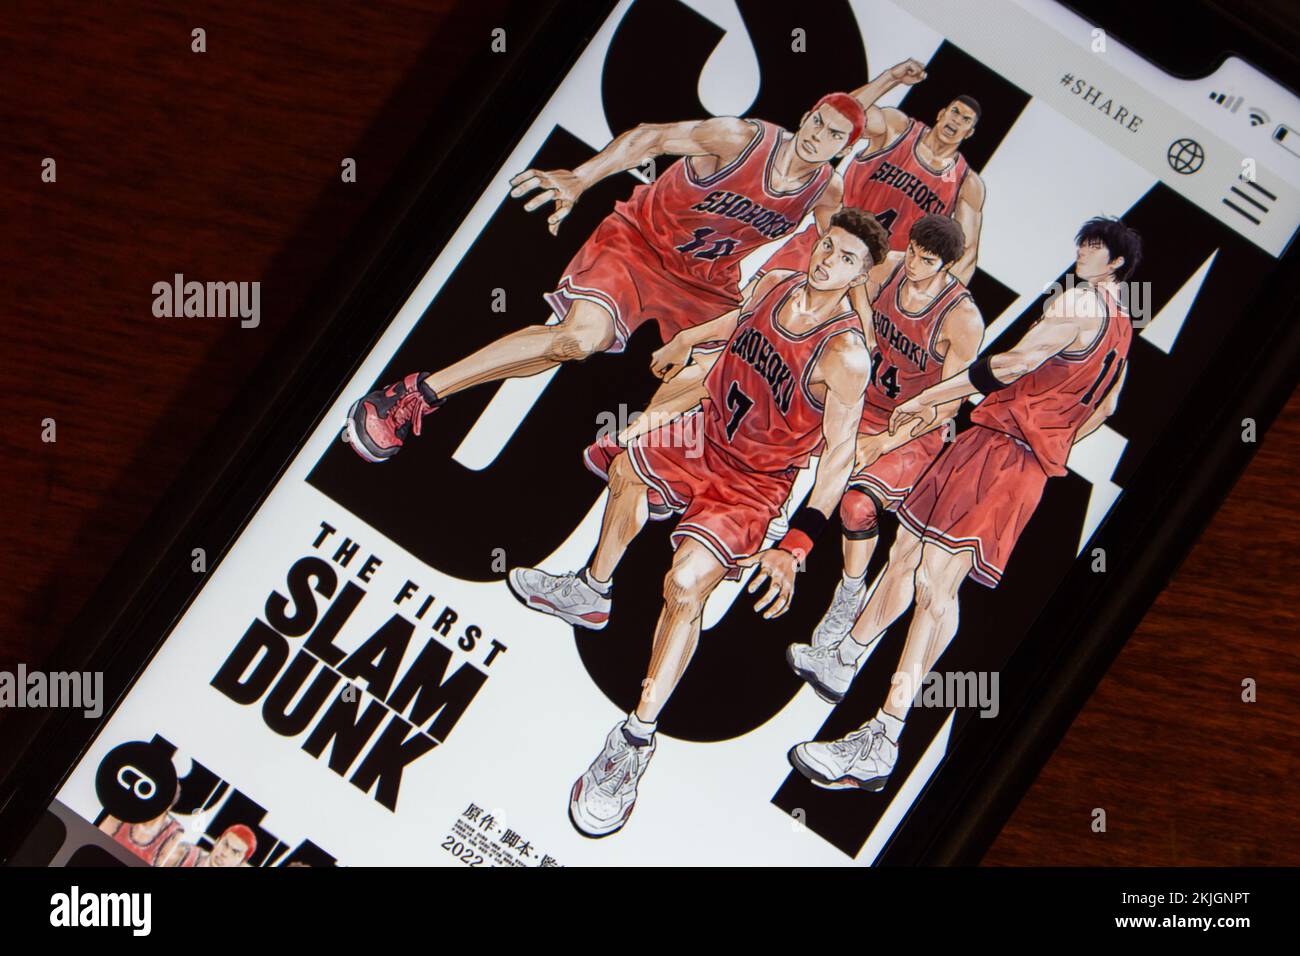 Vancouver, CANADA - novembre 7 2022 : film sportif d'animation japonais le site Web de First Slam Dunk sur un iPhone. Slam Dunk est une série de mangas de sport japonais b Banque D'Images